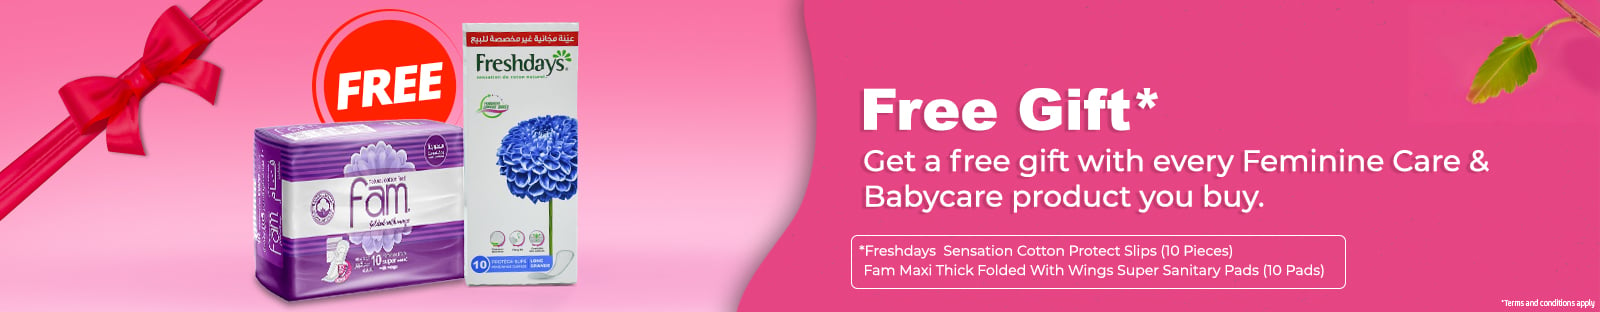 Free Gift Femin care